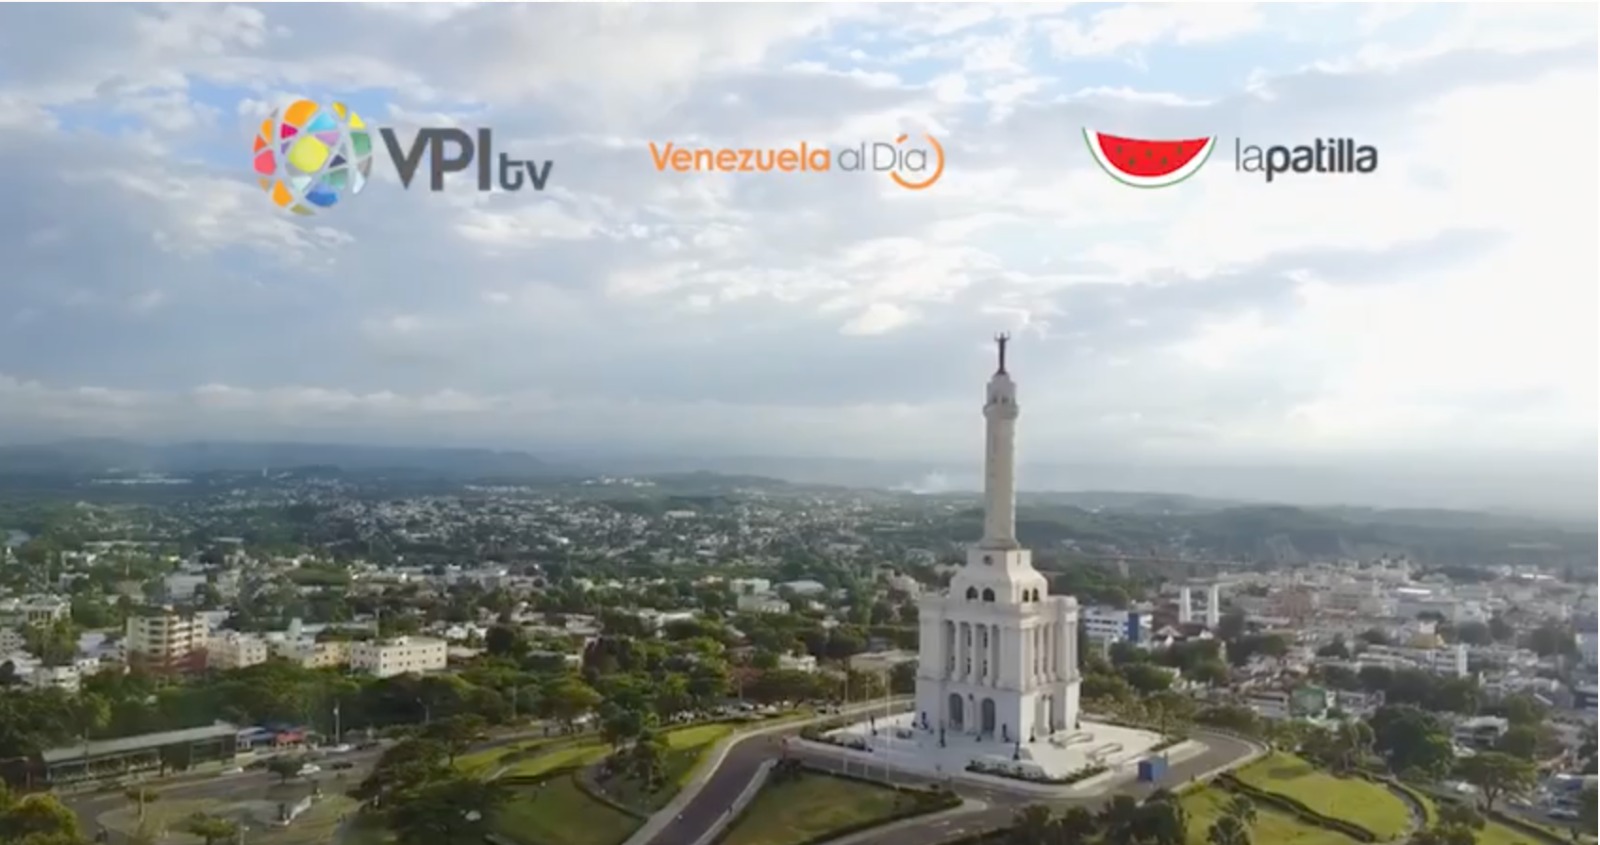 Siga #EnVivo el proceso de negociación de #Venezuela en República Dominicana por La Patilla y Vpi TV